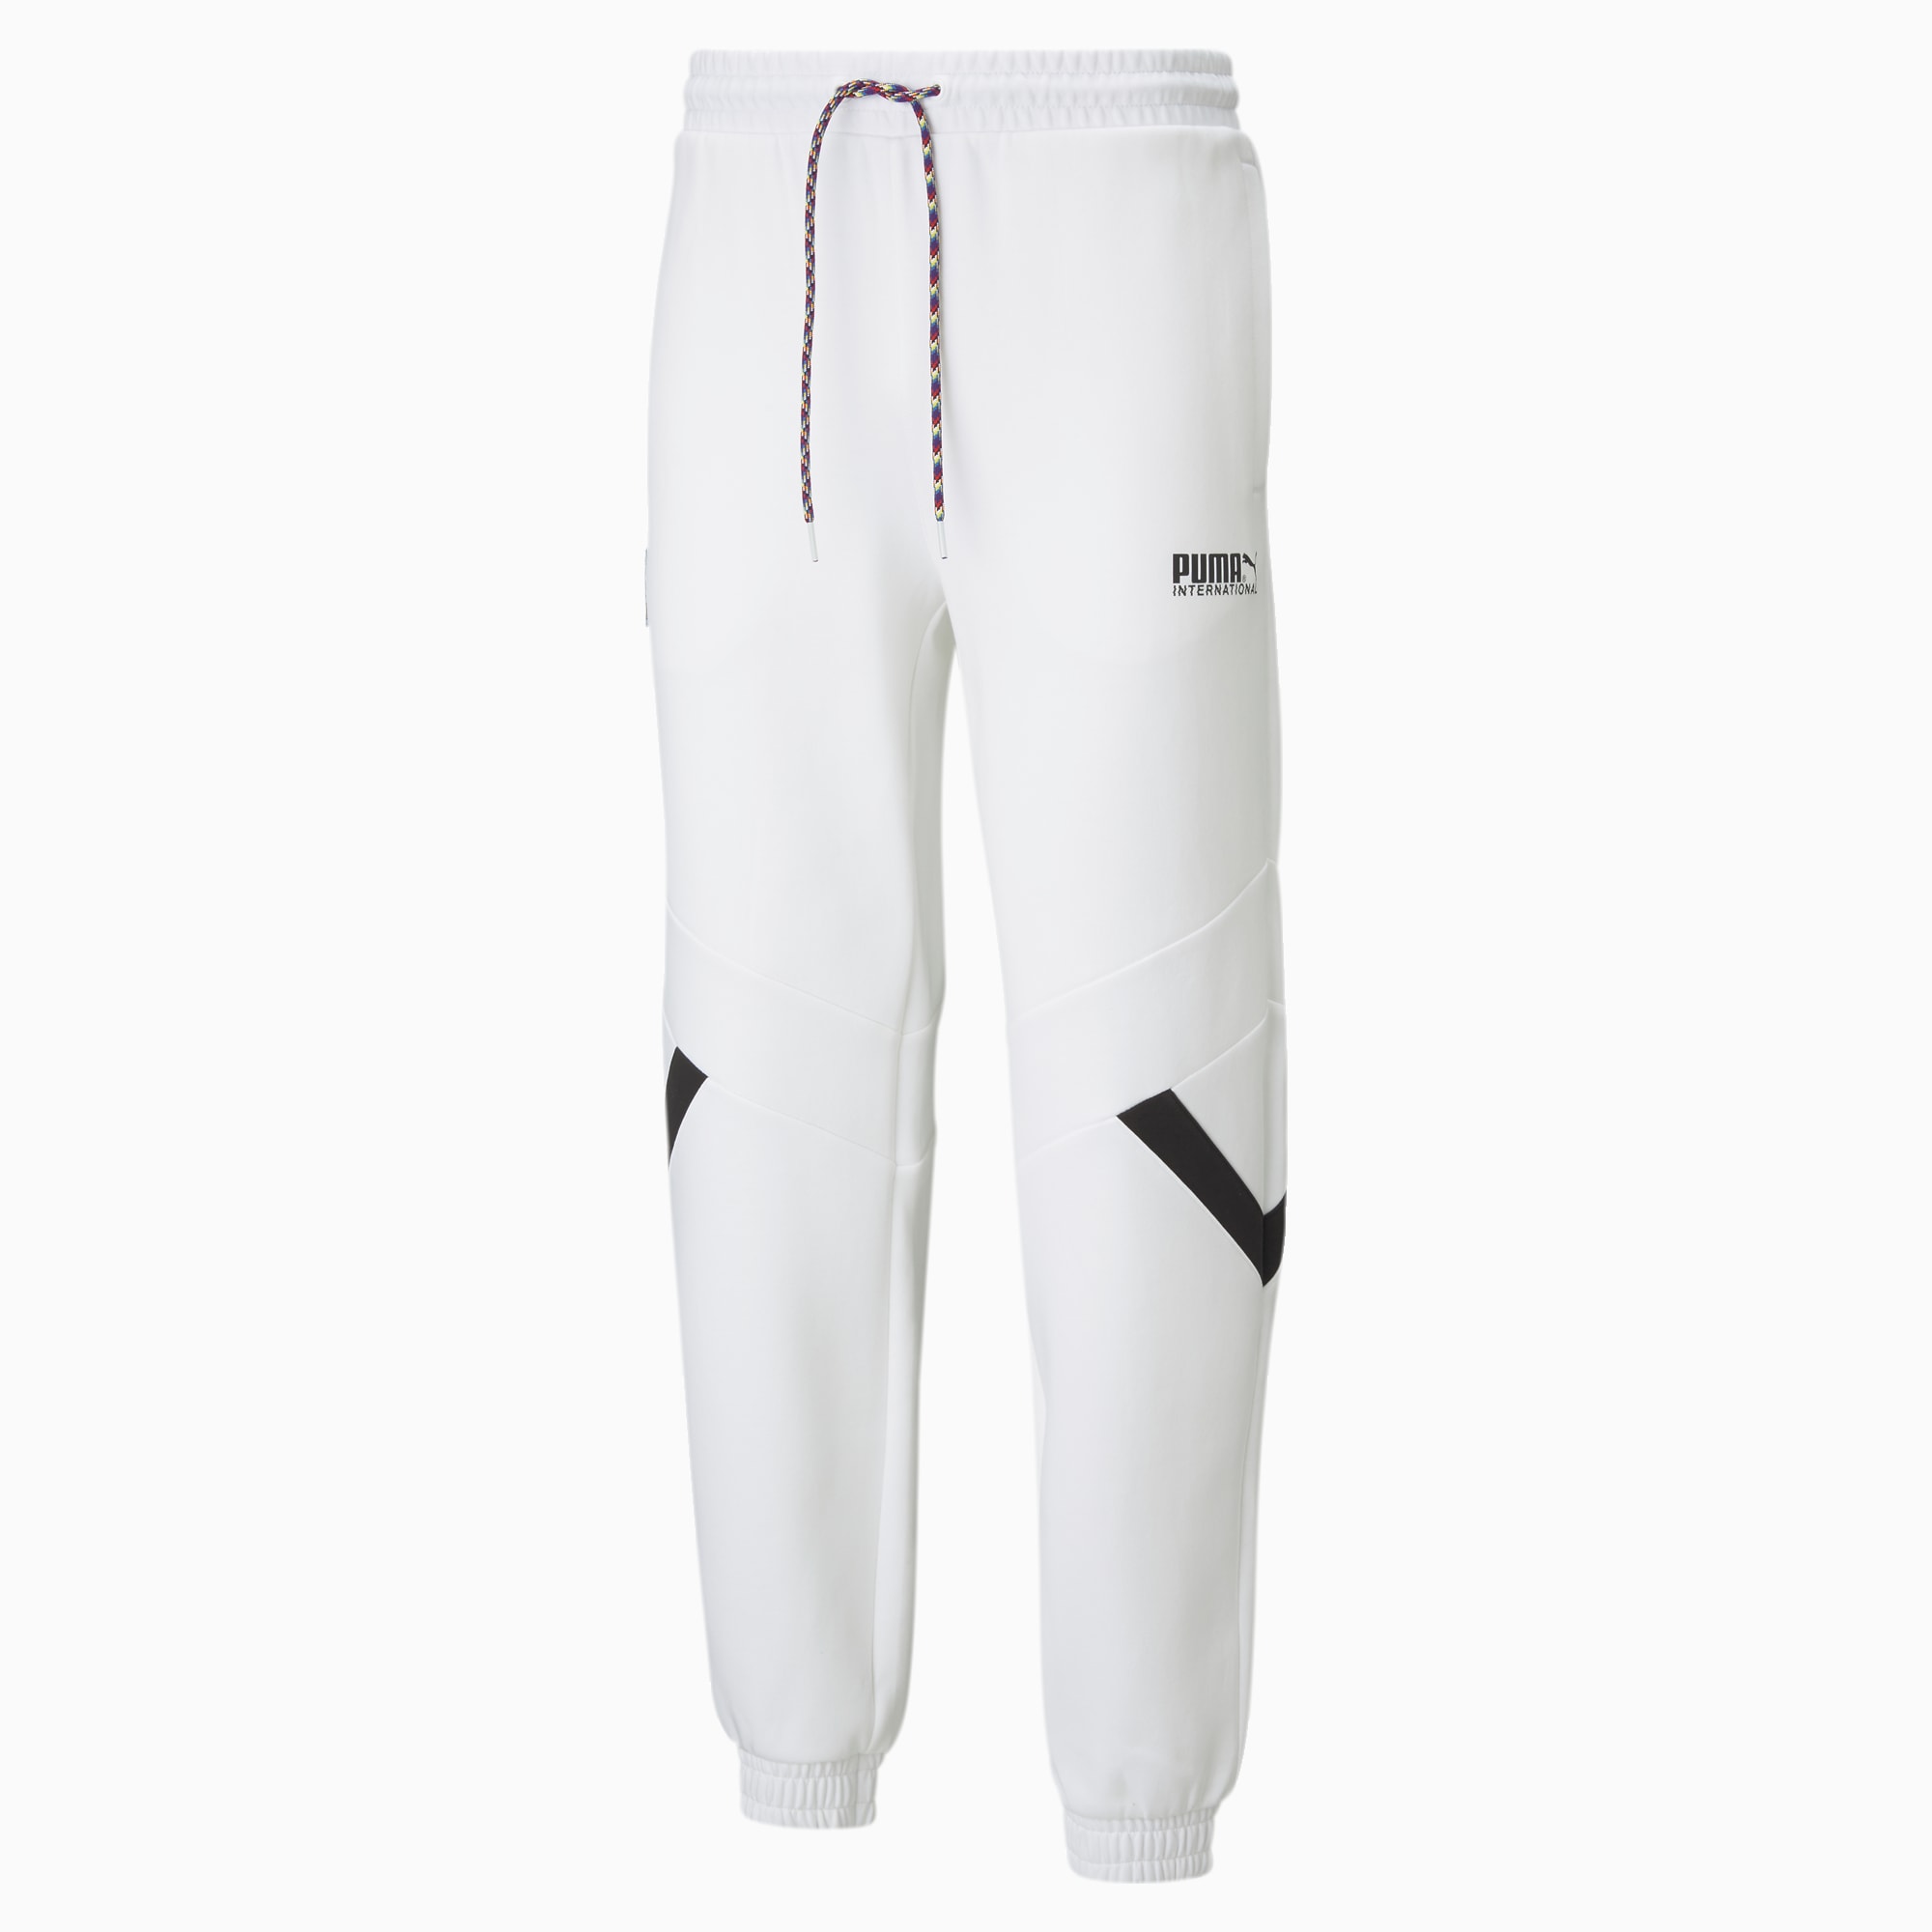 Puma BBALL COMPRESSION - 3/4 sports trousers - puma white/white - Zalando.de